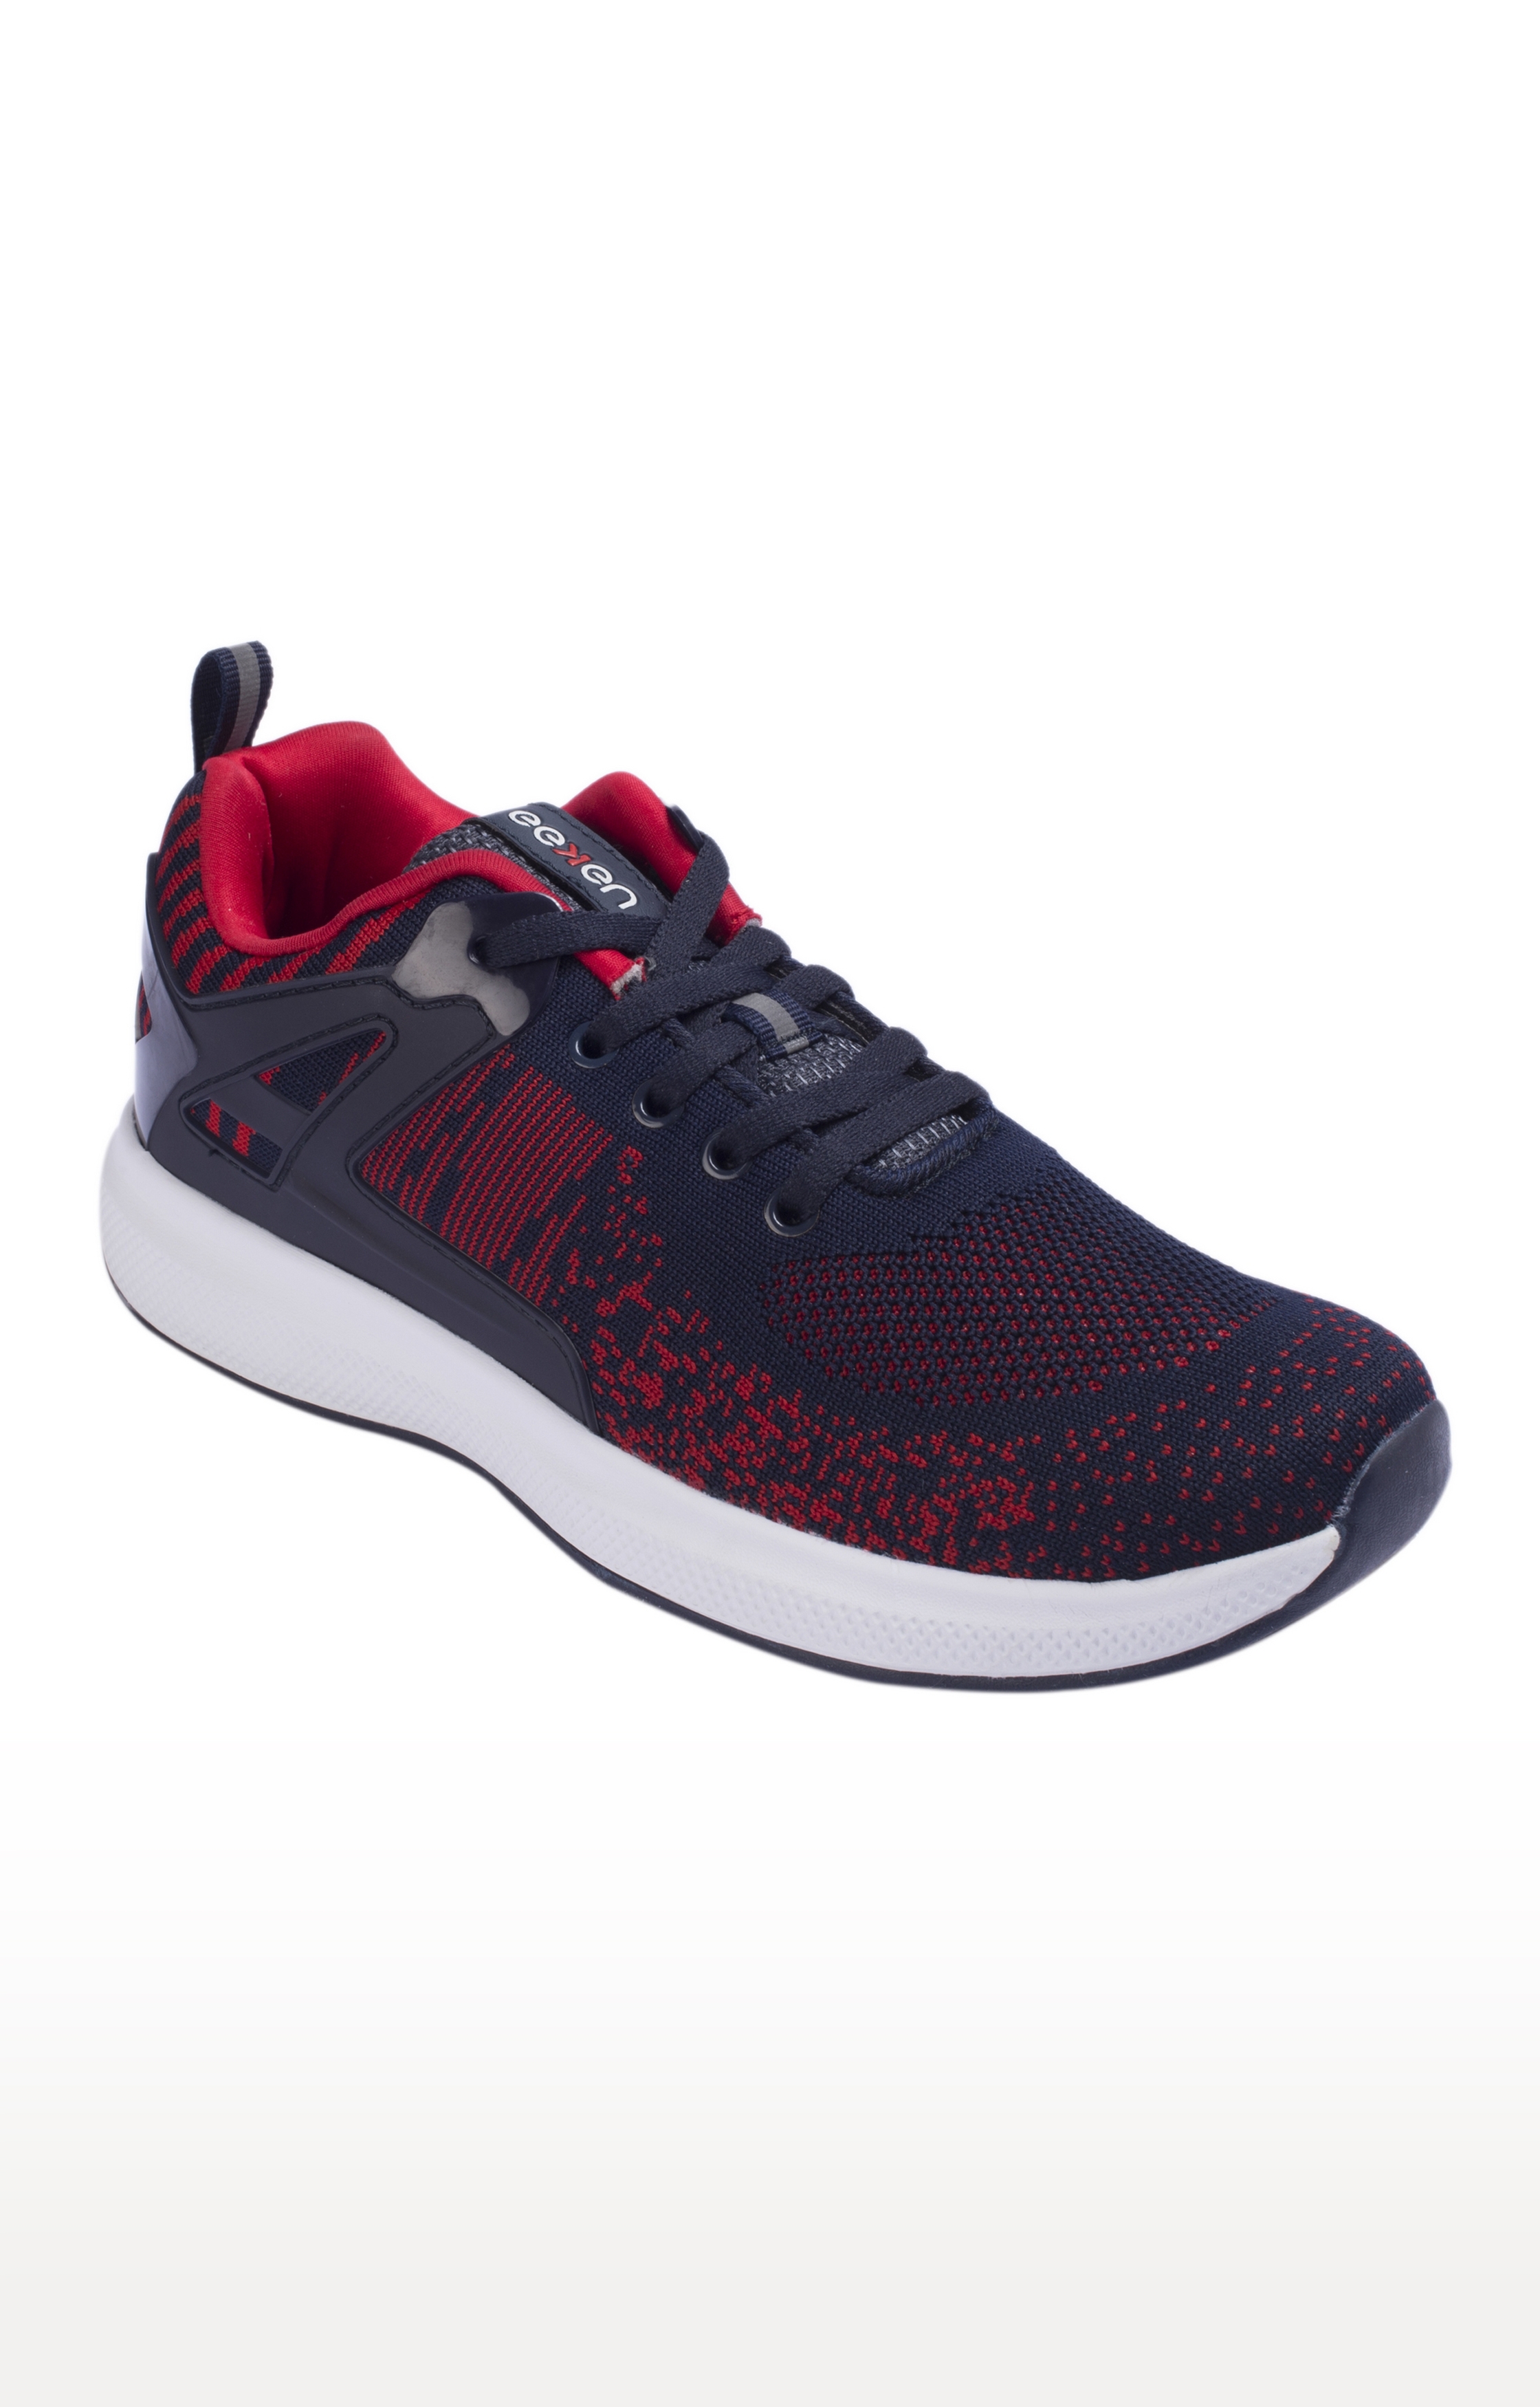 EEKEN | Eeken Navy-Red Athleisure Lightweight Casual Shoes For Men 